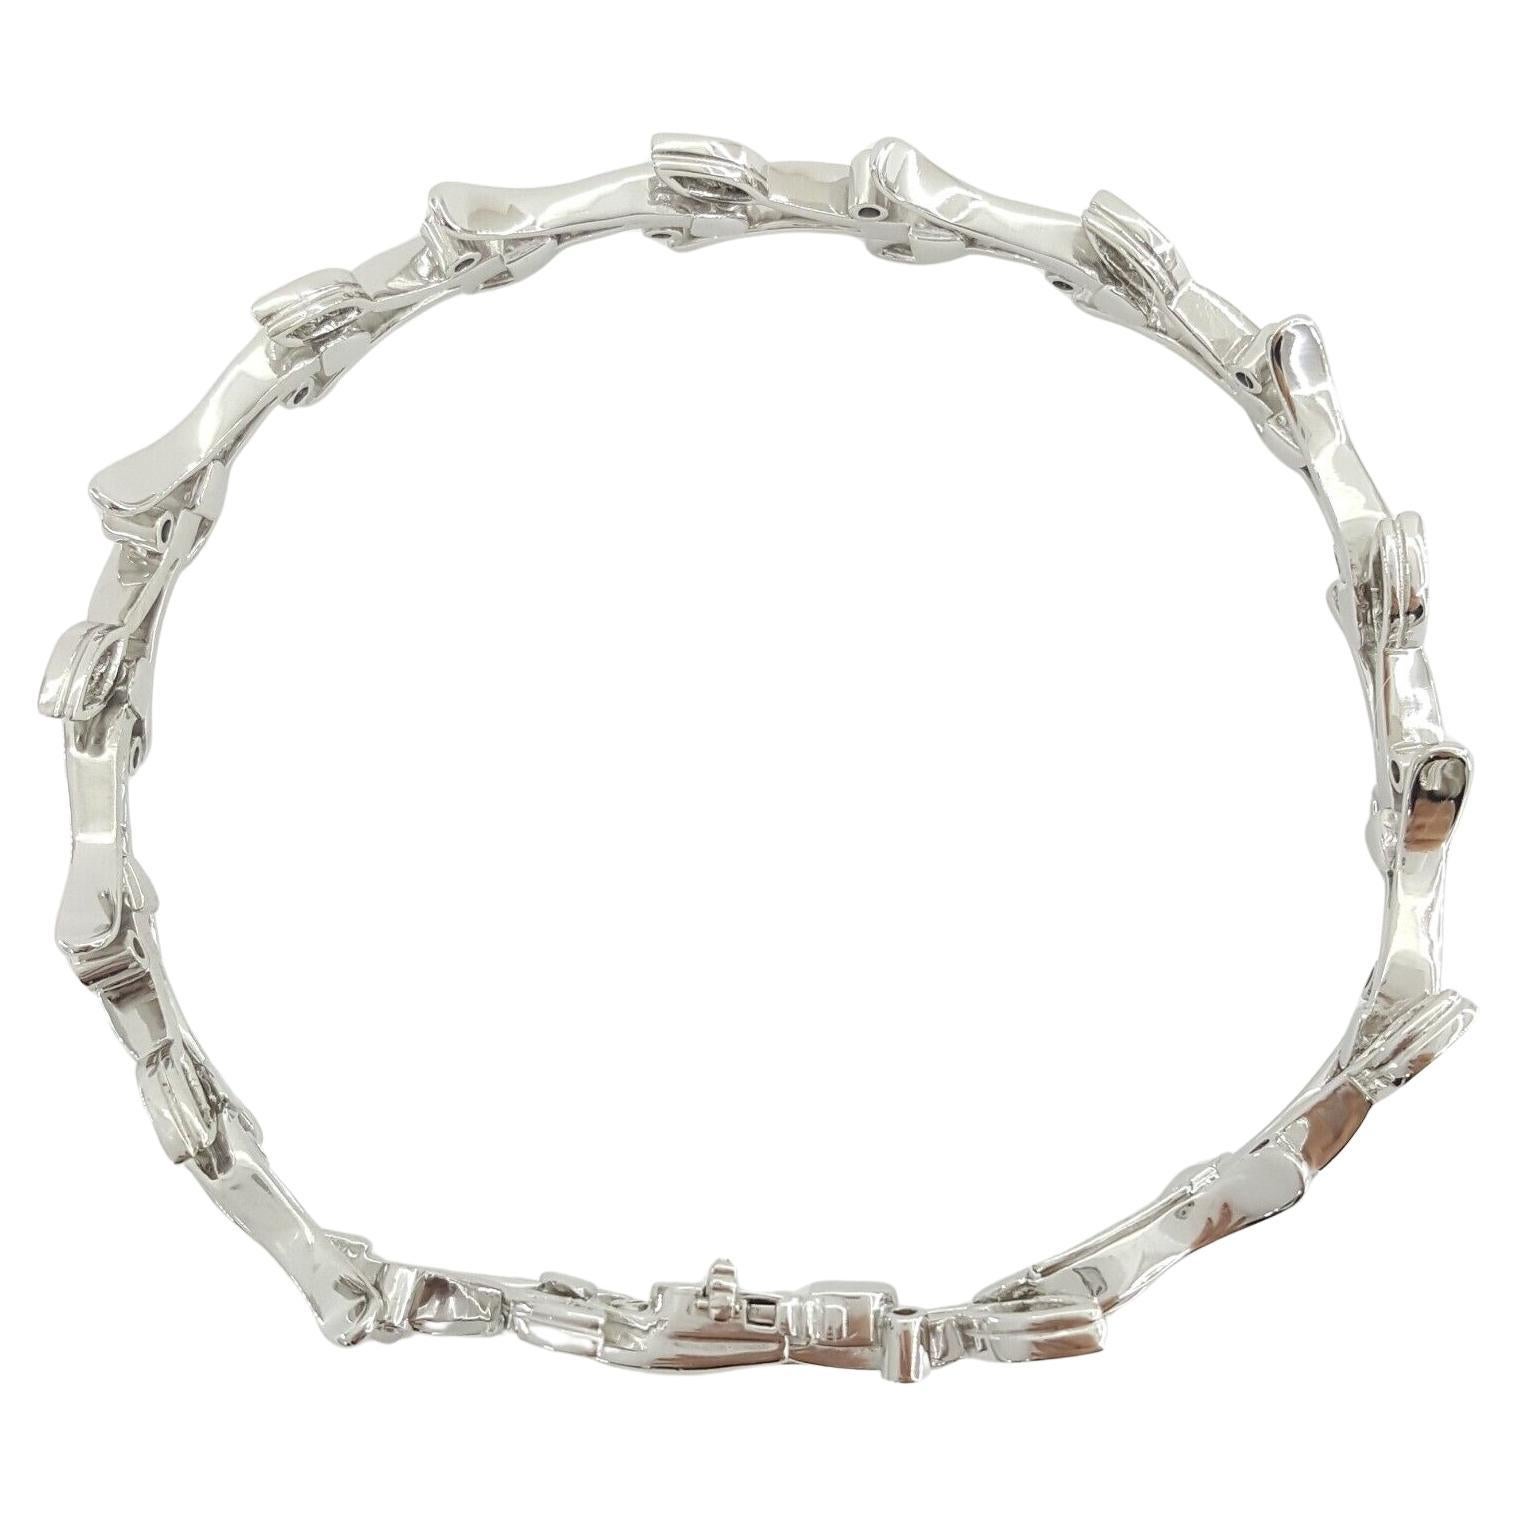 Ce luxueux bracelet en platine serti de diamants de Tiffany & Co, qui fait partie de la collection 1999 Garland Leaf, est un exemple exquis de design intemporel et de savoir-faire artisanal. Avec un poids de 31,7 grammes et une longueur de 7 pouces,